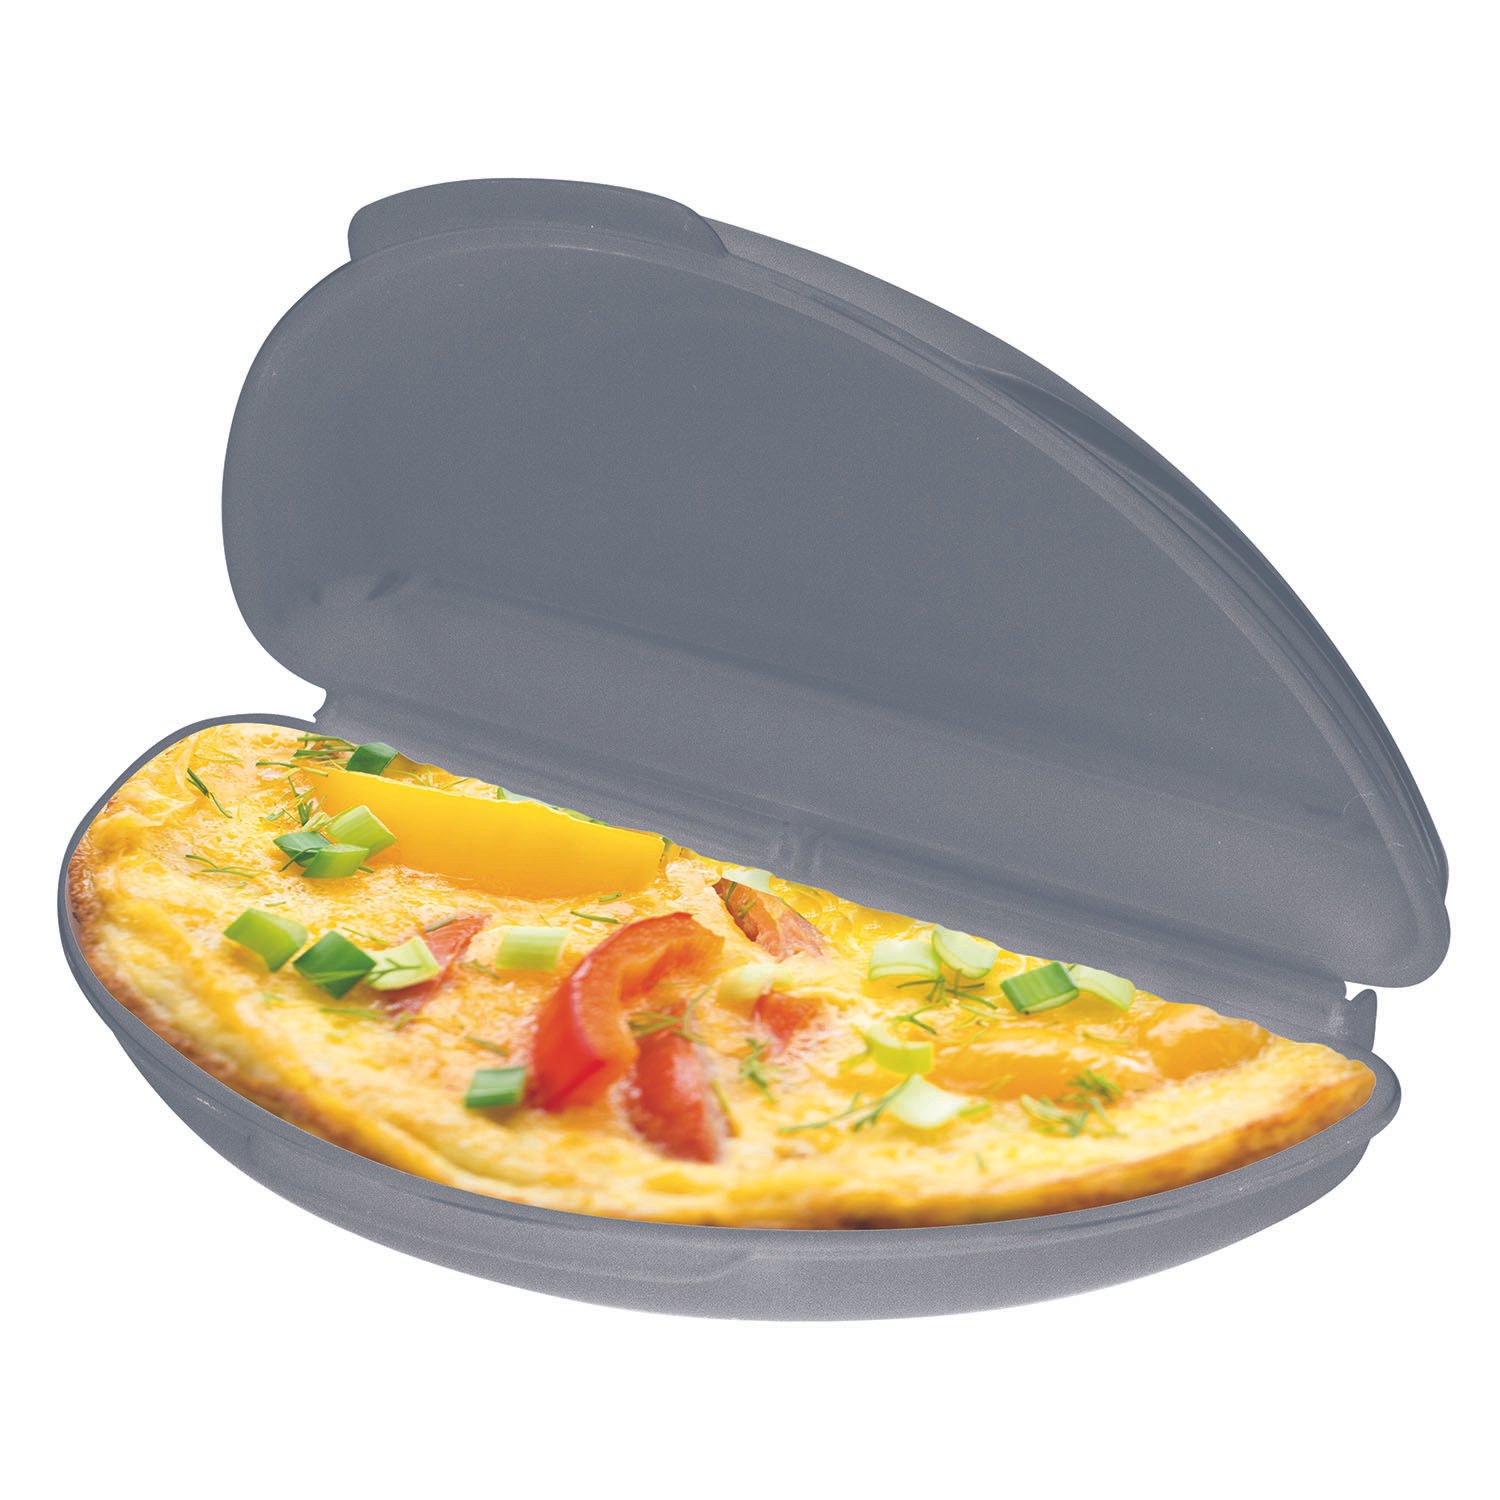 Moule à omelette pour micro-ondes